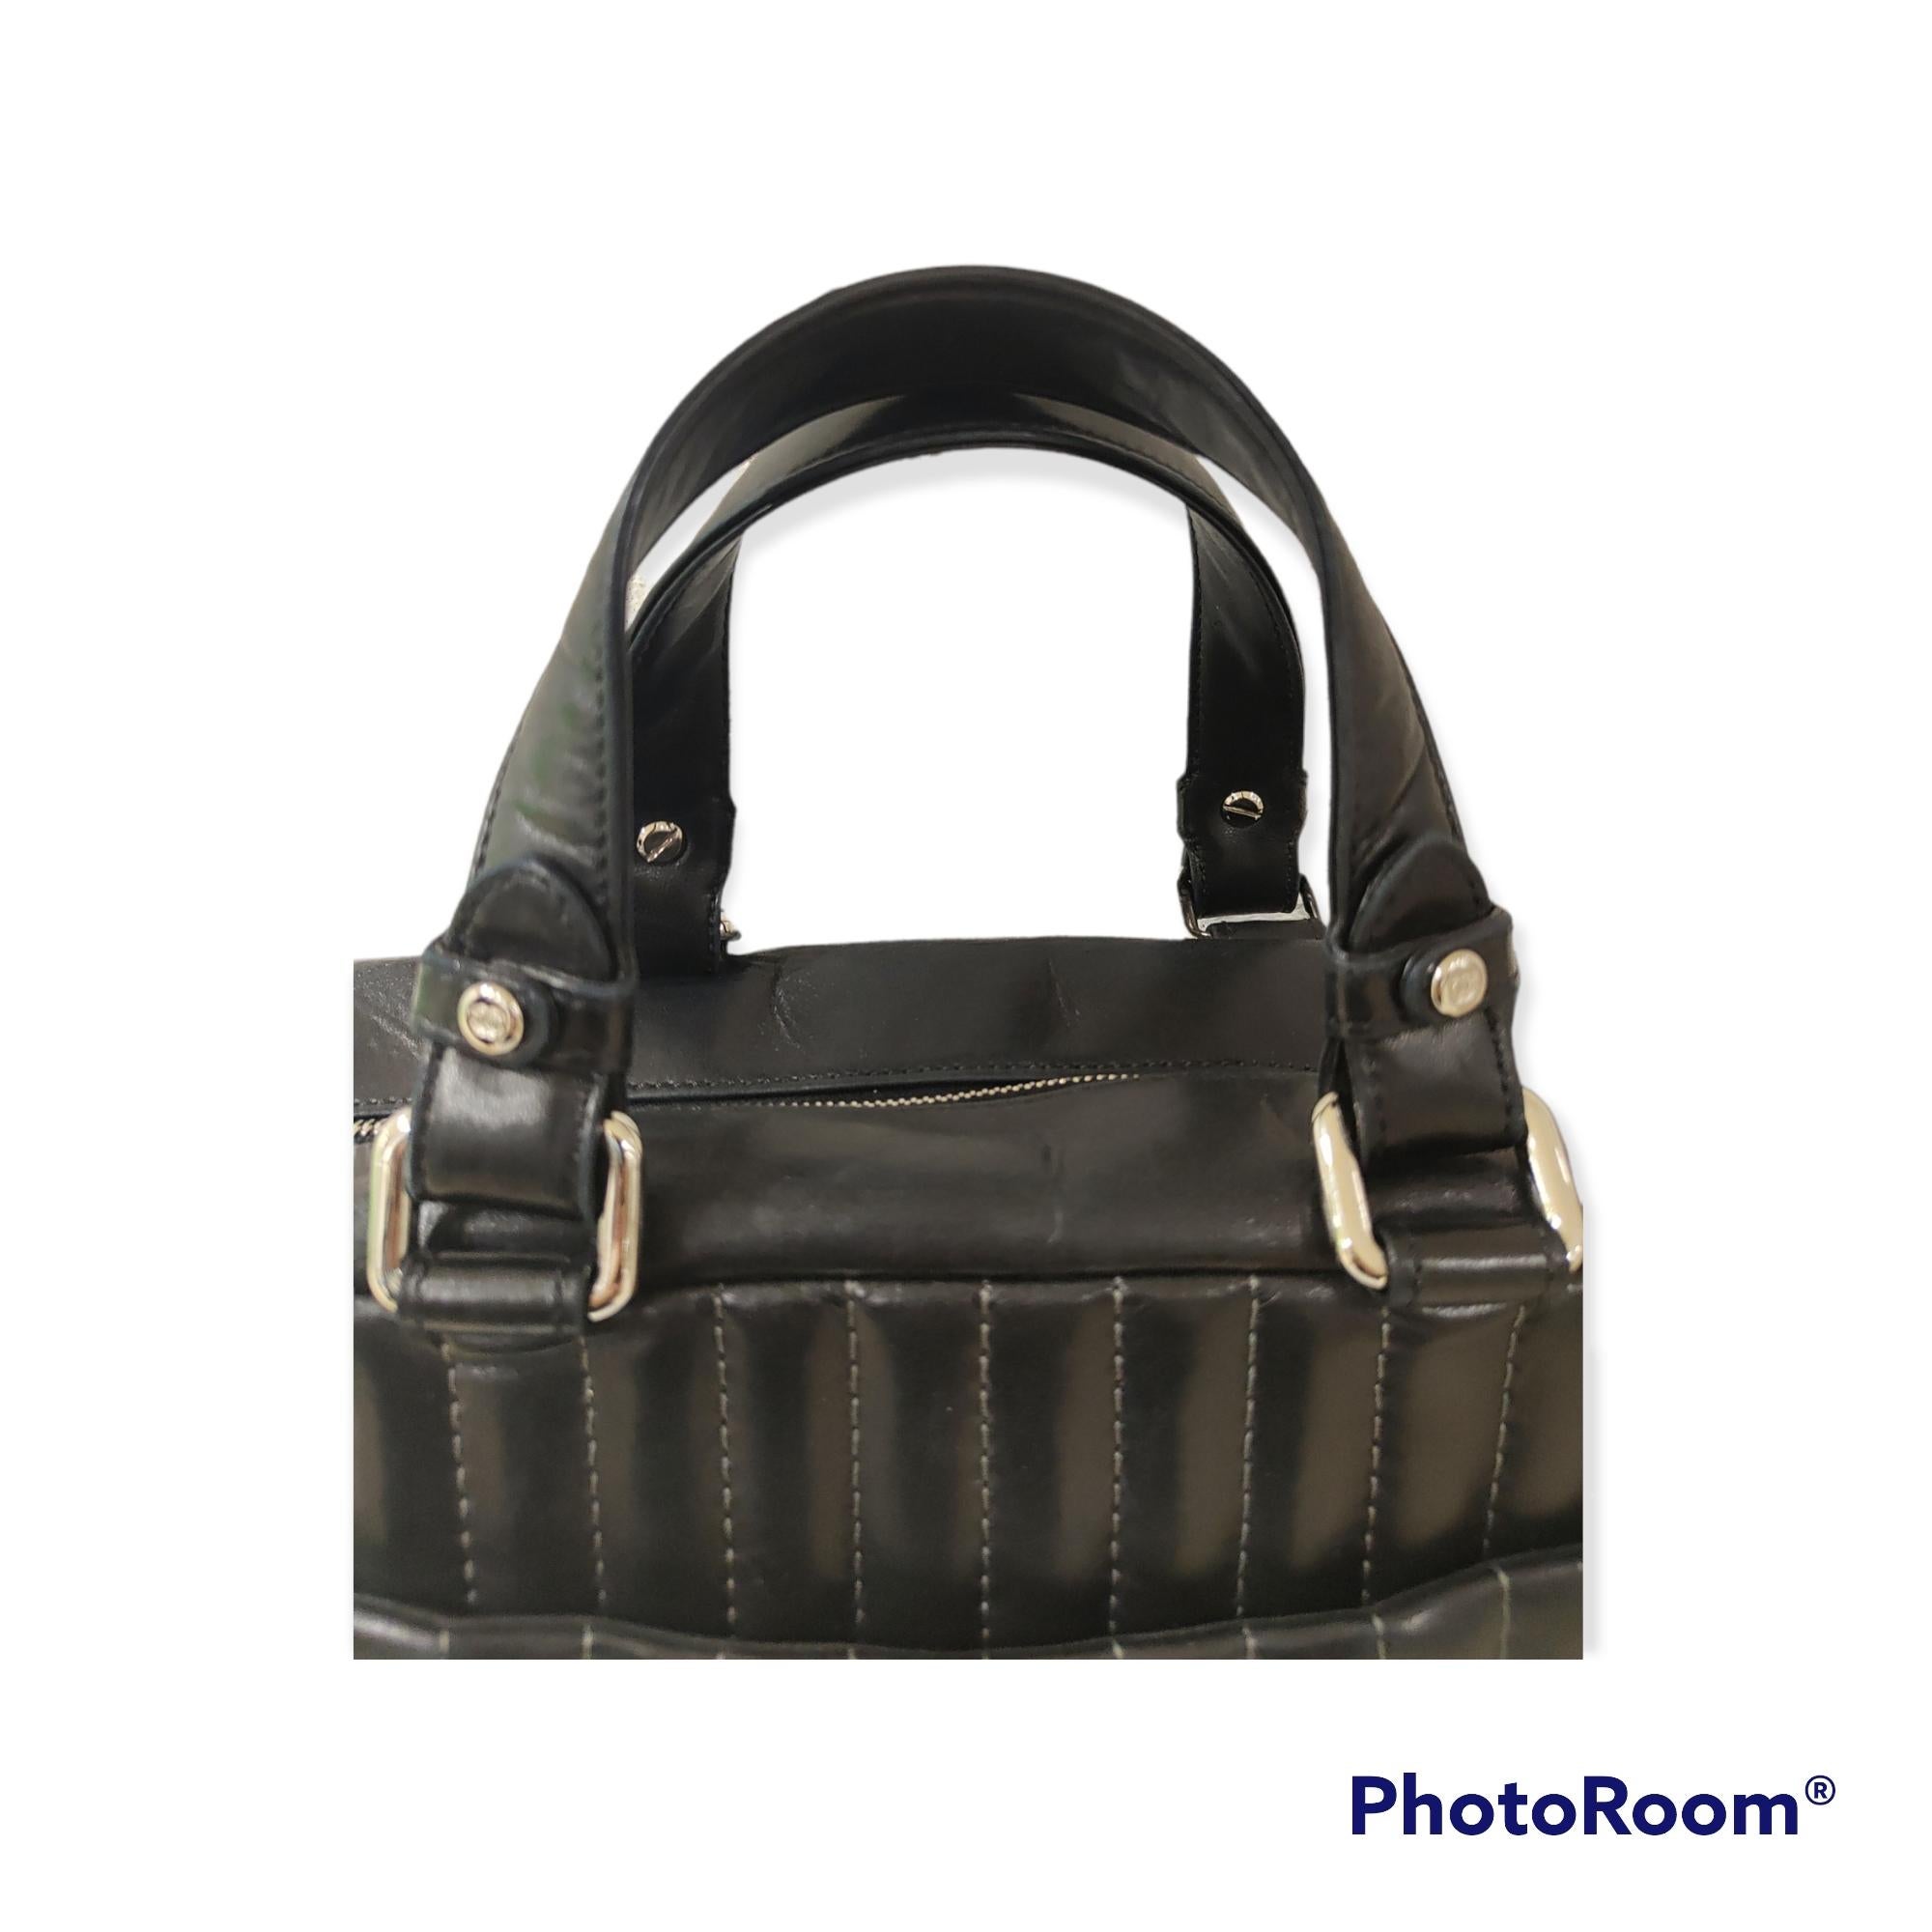 Chanel black leather vertical shoulder handle bag
measurements: 31 * 17 cm, depth 13 cm